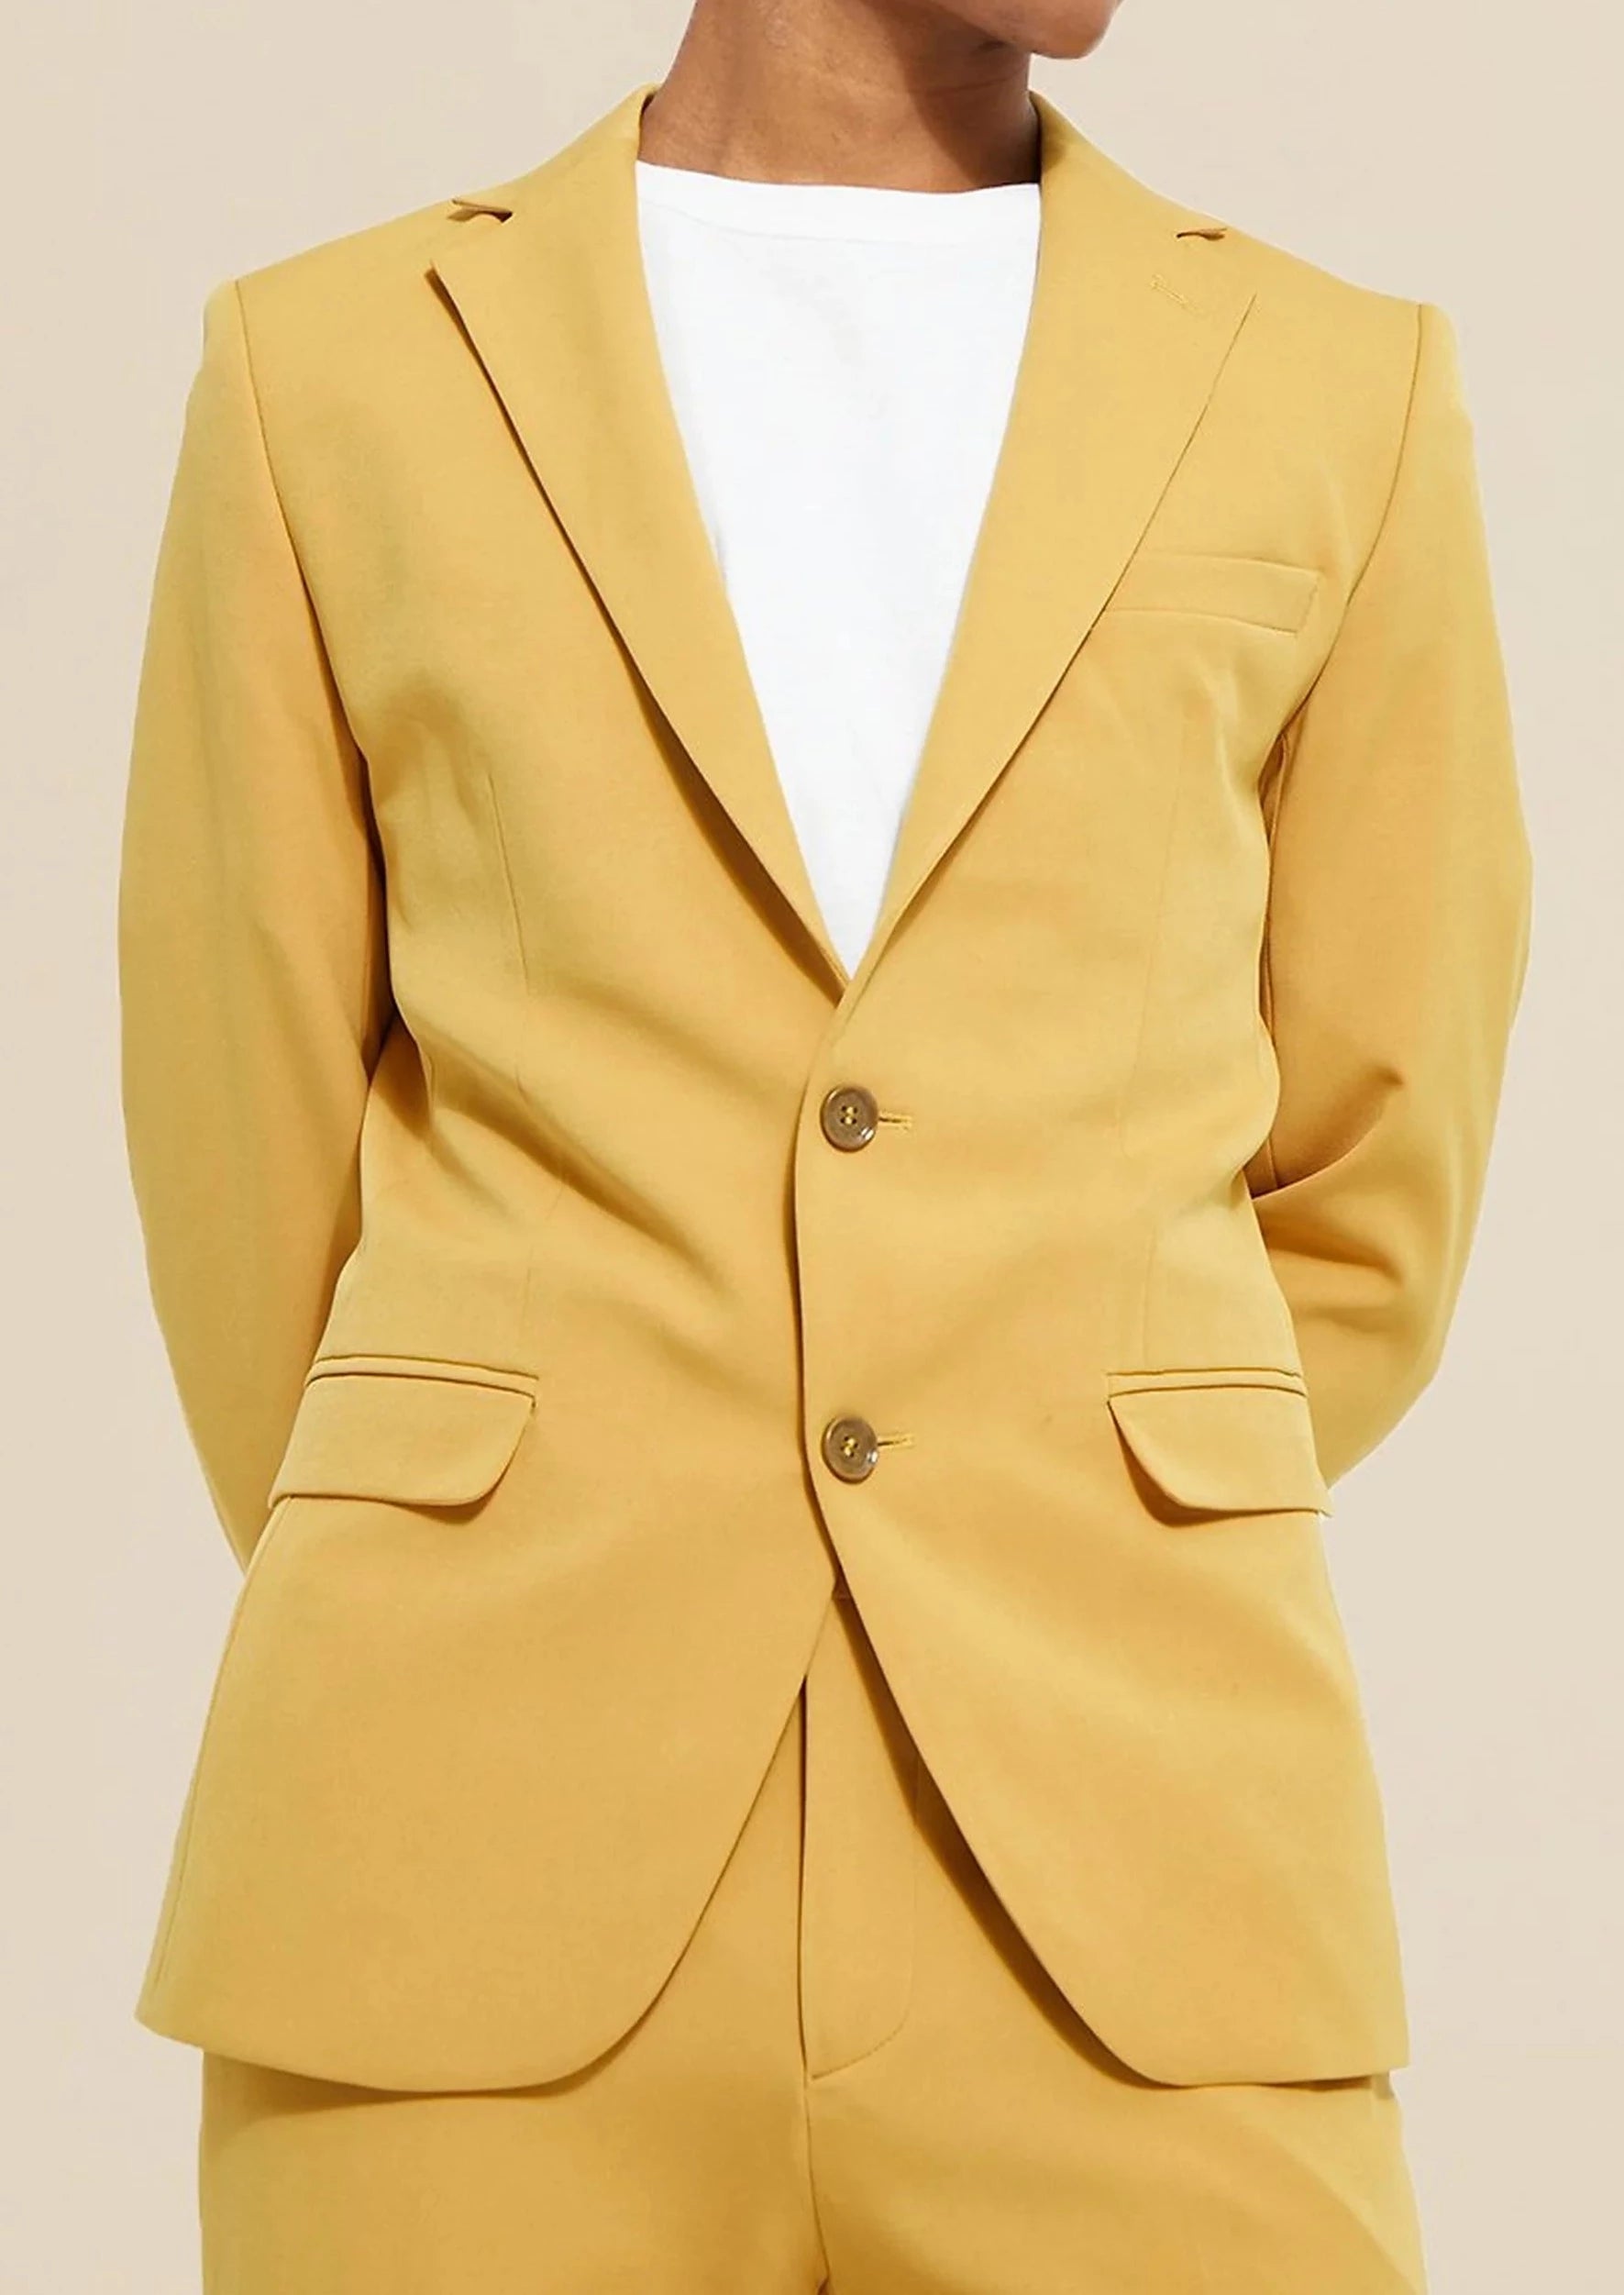 Ferrecci Cotton Slim fit Yellow Notch Lapel 2 Button Seersucker Suit Vest  Optional